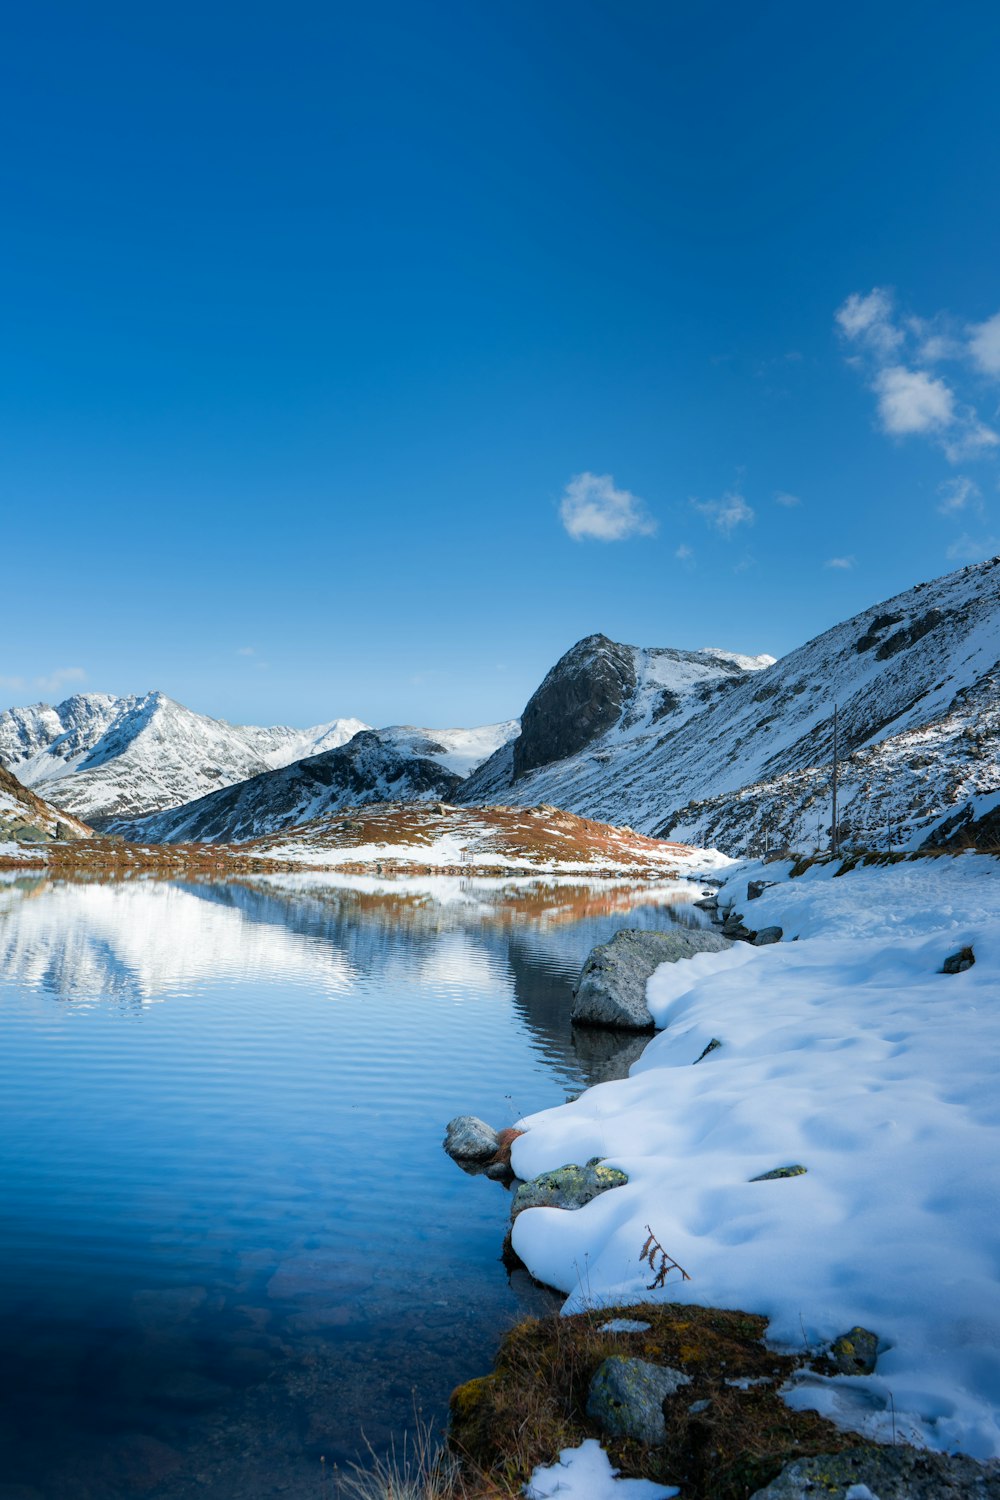 Ein See, umgeben von schneebedeckten Bergen unter blauem Himmel